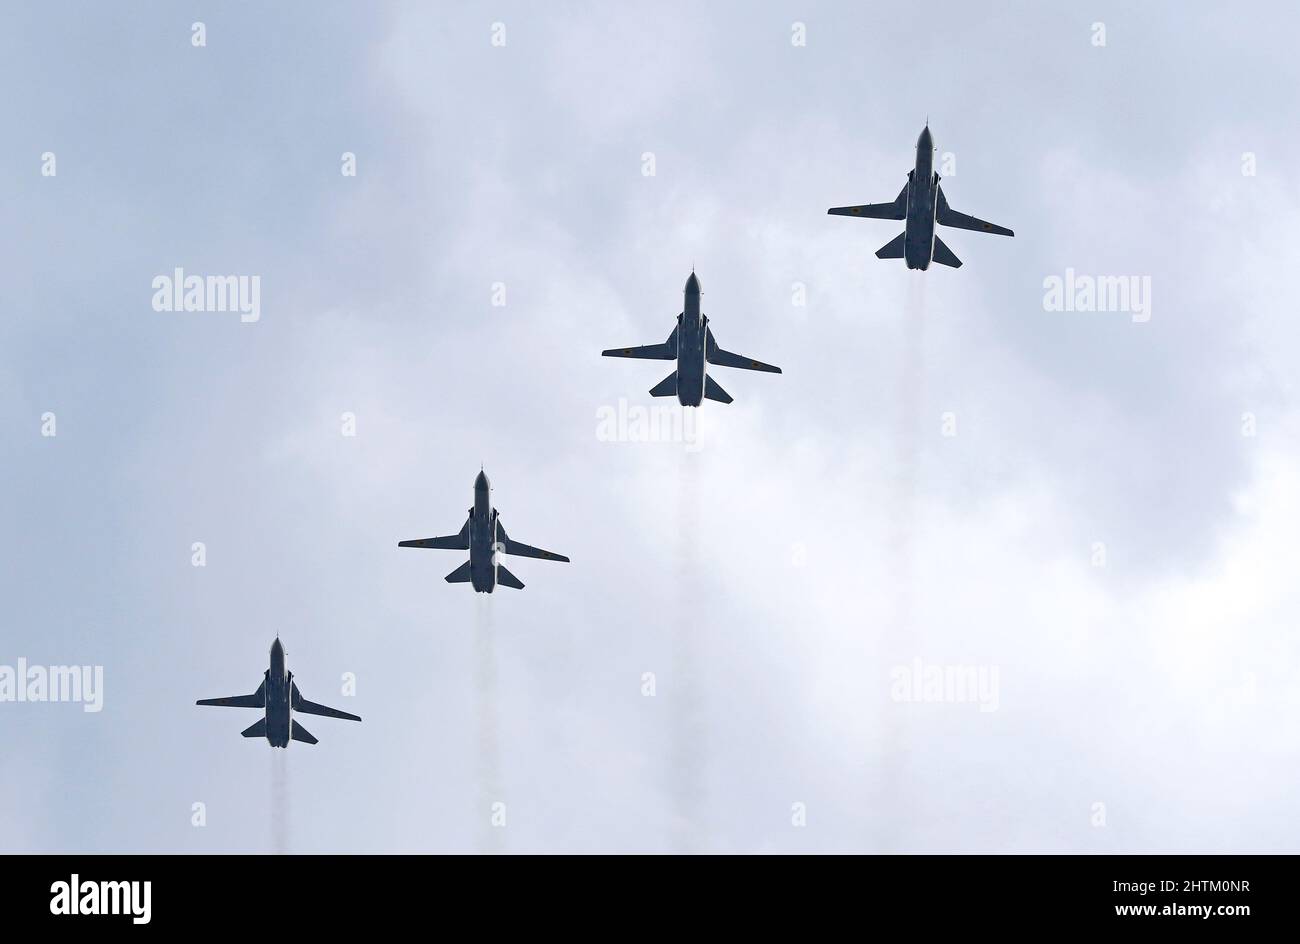 Kiev, Ukraine - 24 août 2021 : avions de la Force aérienne ukrainienne su-24M Fencer dans le ciel au-dessus de Kiev pendant la parade de l'indépendance de l'Ukraine Banque D'Images